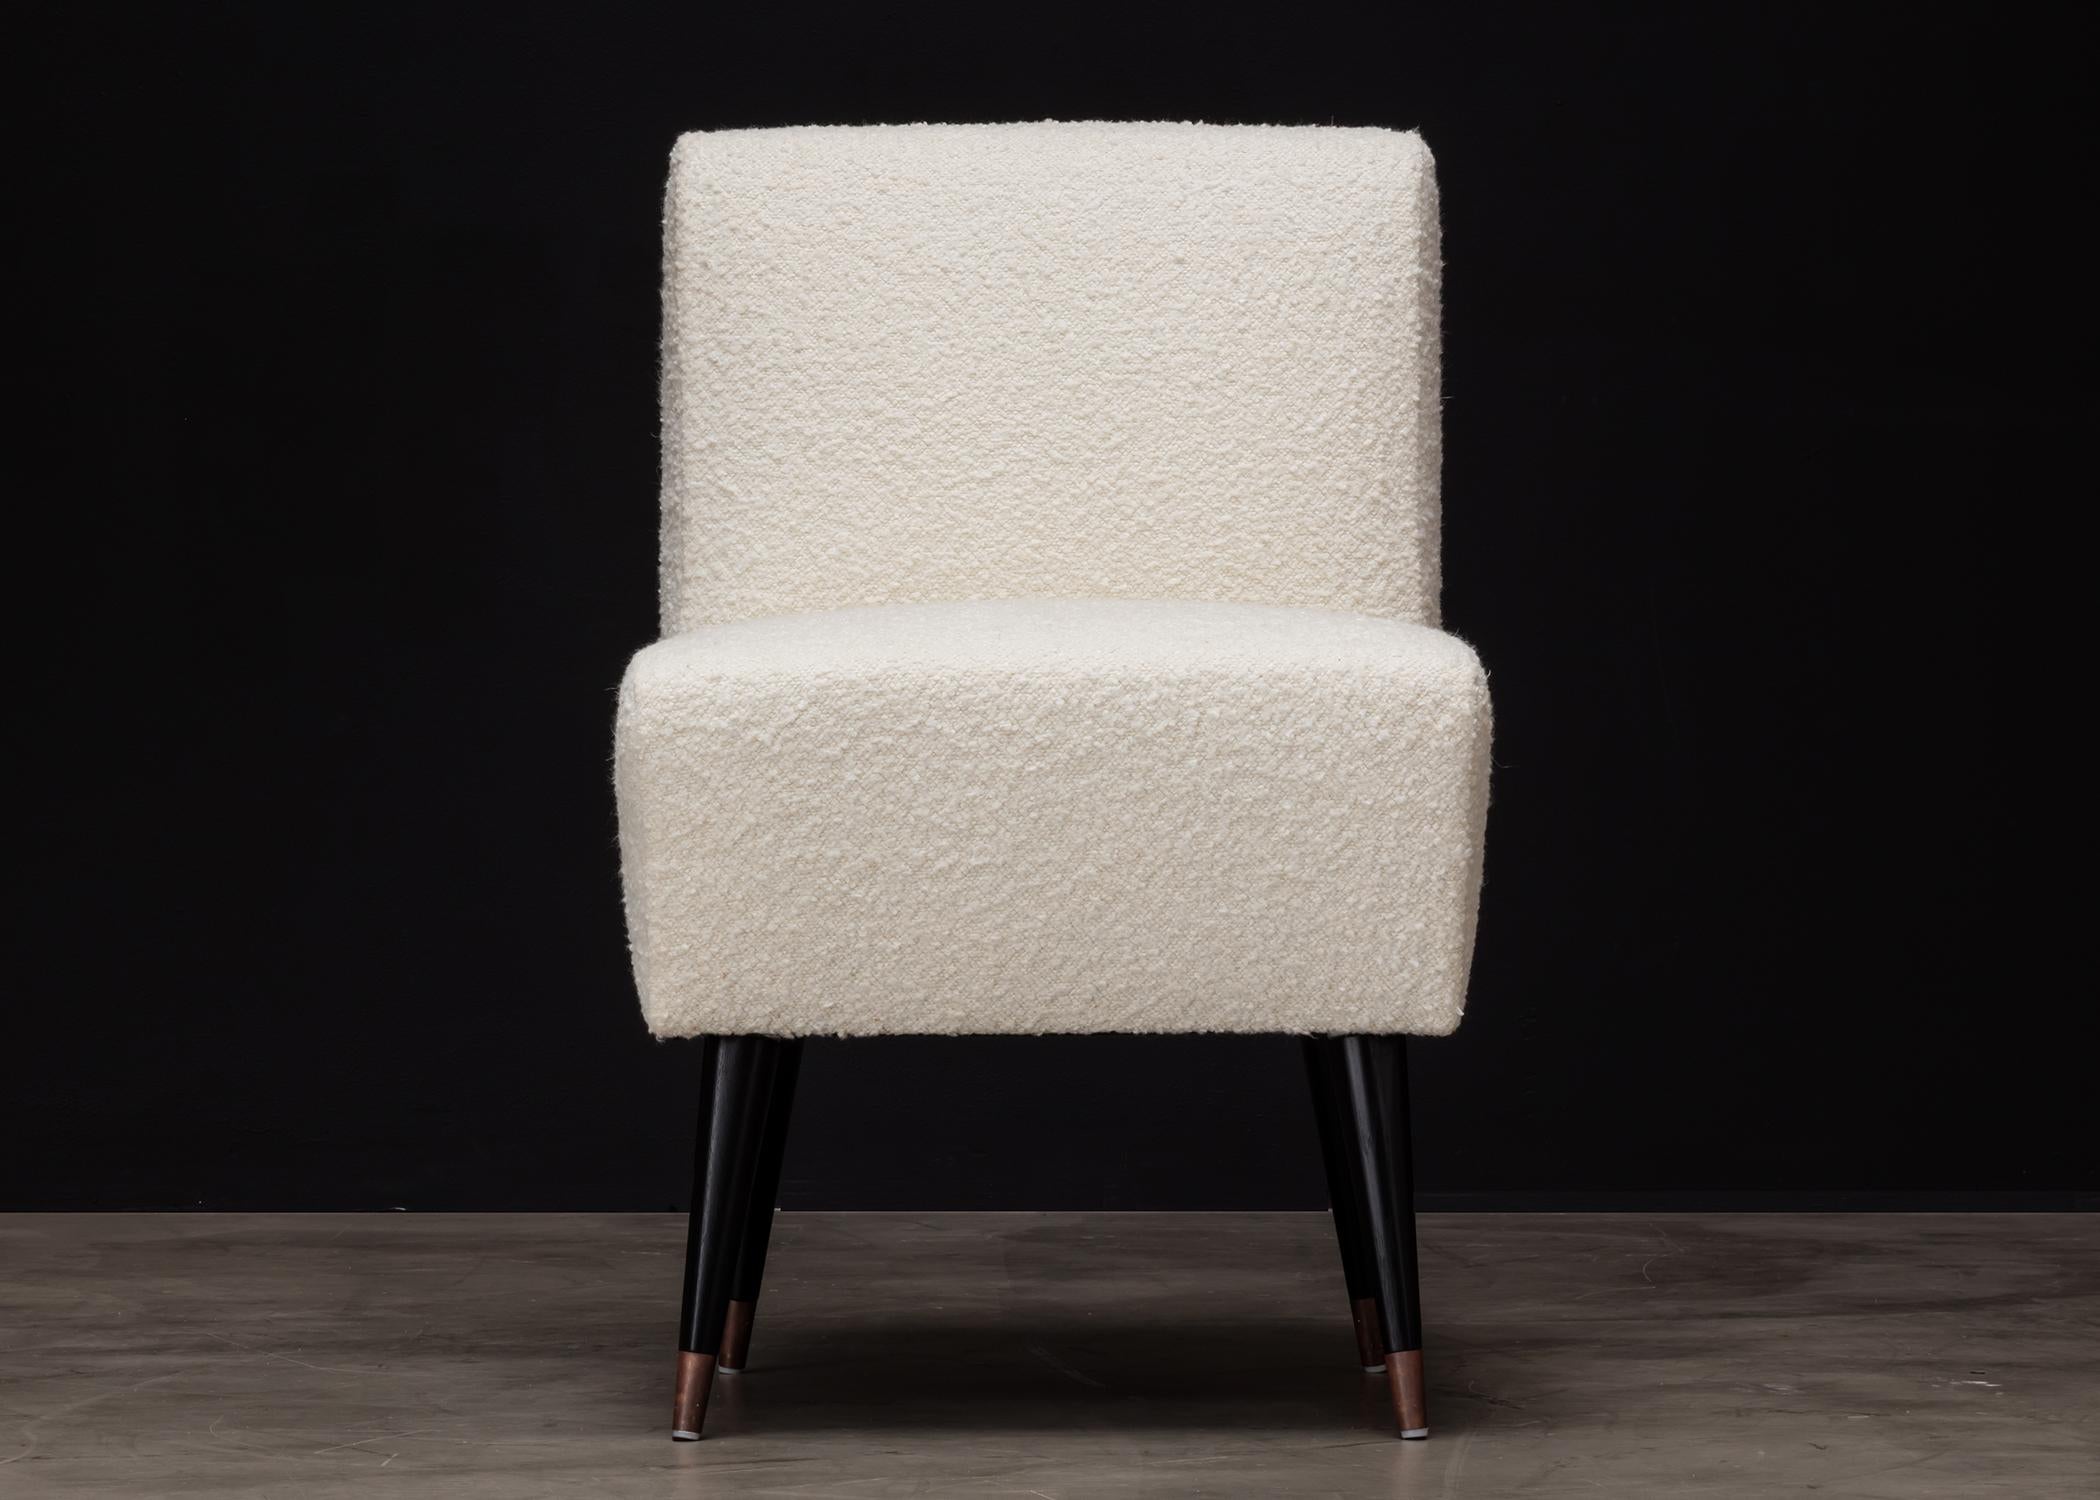 La chaise de salle à manger Be.Jolie est un meuble élégant et confortable conçu avec une esthétique moderne. Il se caractérise par des lignes épurées qui ajoutent un sentiment d'élégance et de sophistication à tout espace de salle à manger. Cette